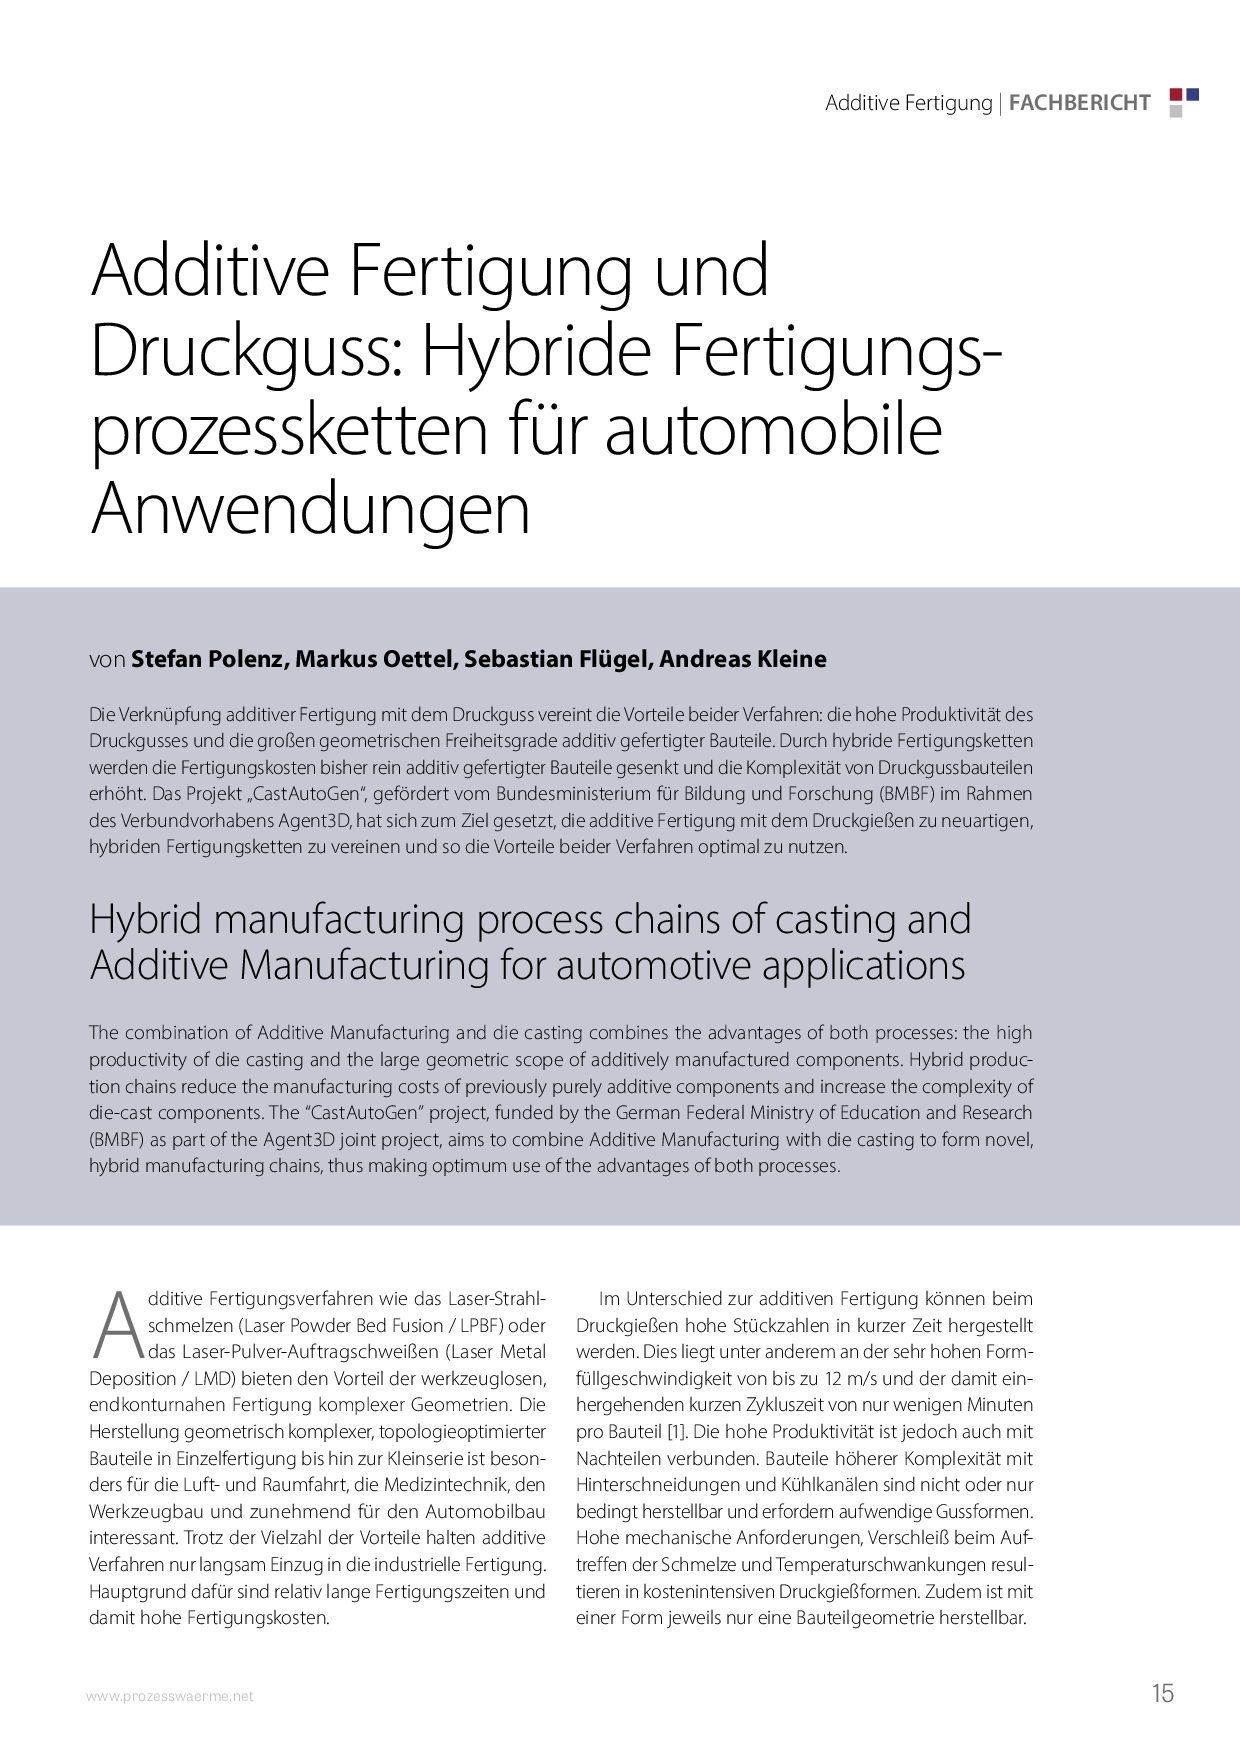 Additive Fertigung und Druckguss: Hybride Fertigungsprozessketten für automobile Anwendungen